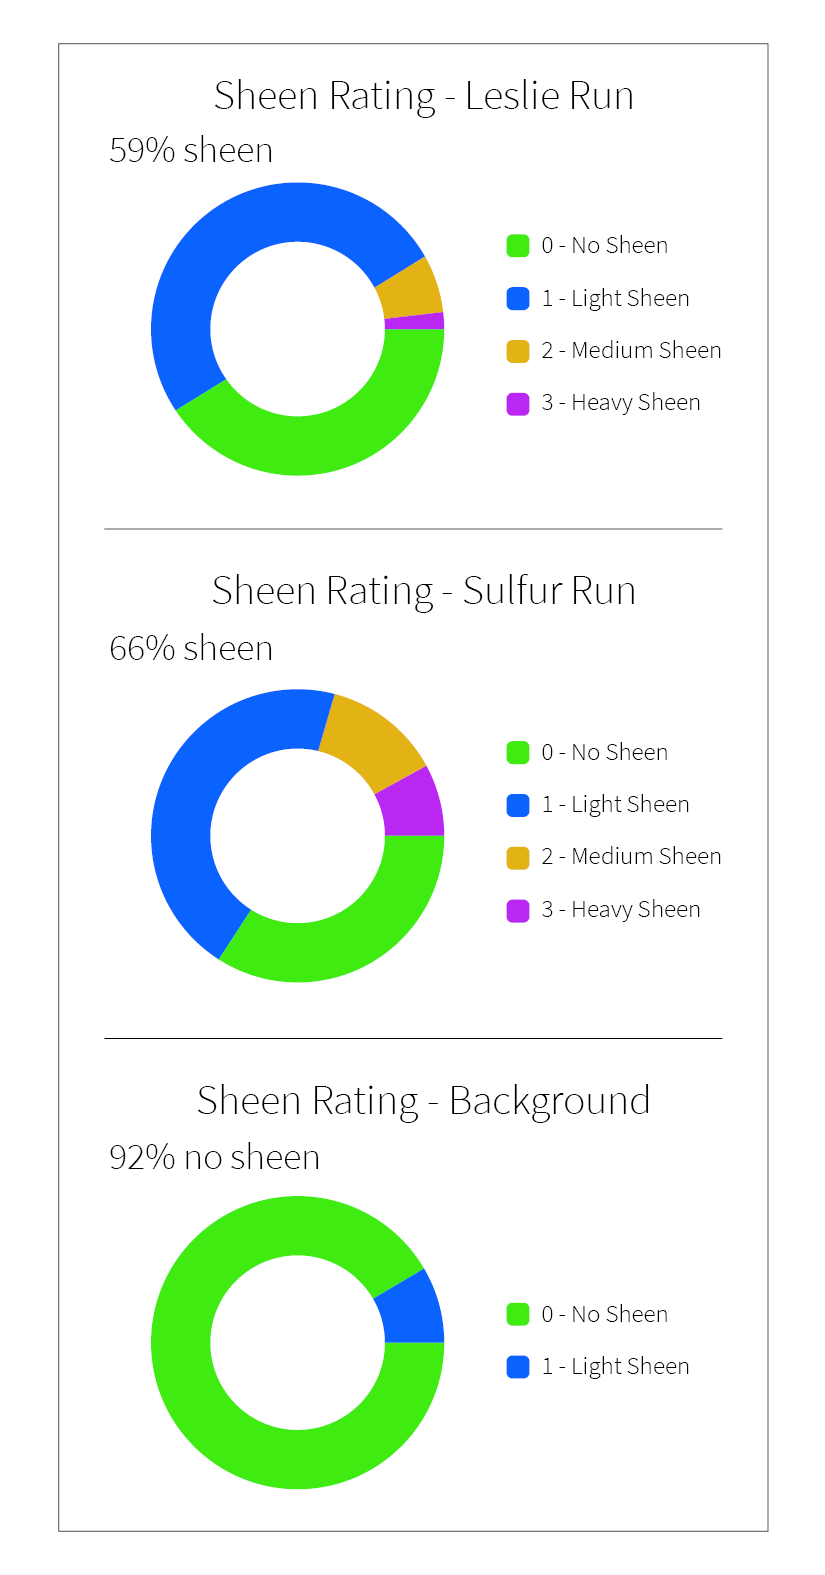 Pie charts showing levels of sheen rating for Leslie Run  59% light sheen, Sulfur Run 66% light sheen, background 92% no sheen